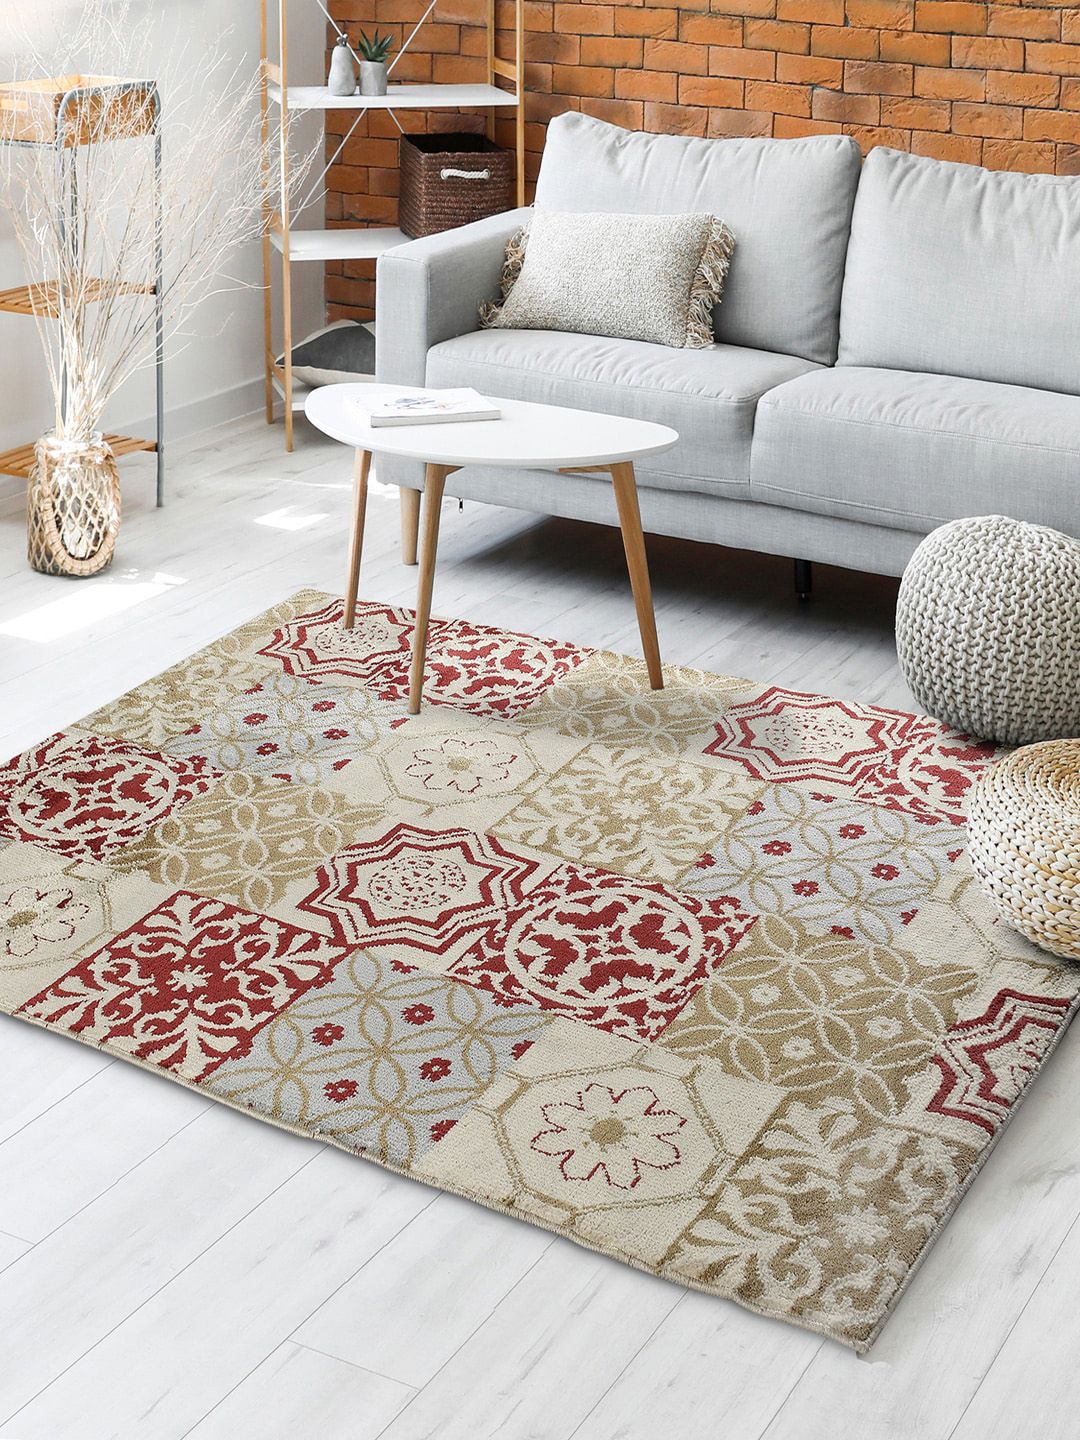 Saral Home Beige & Maroon Printed Floor Carpet Price in India